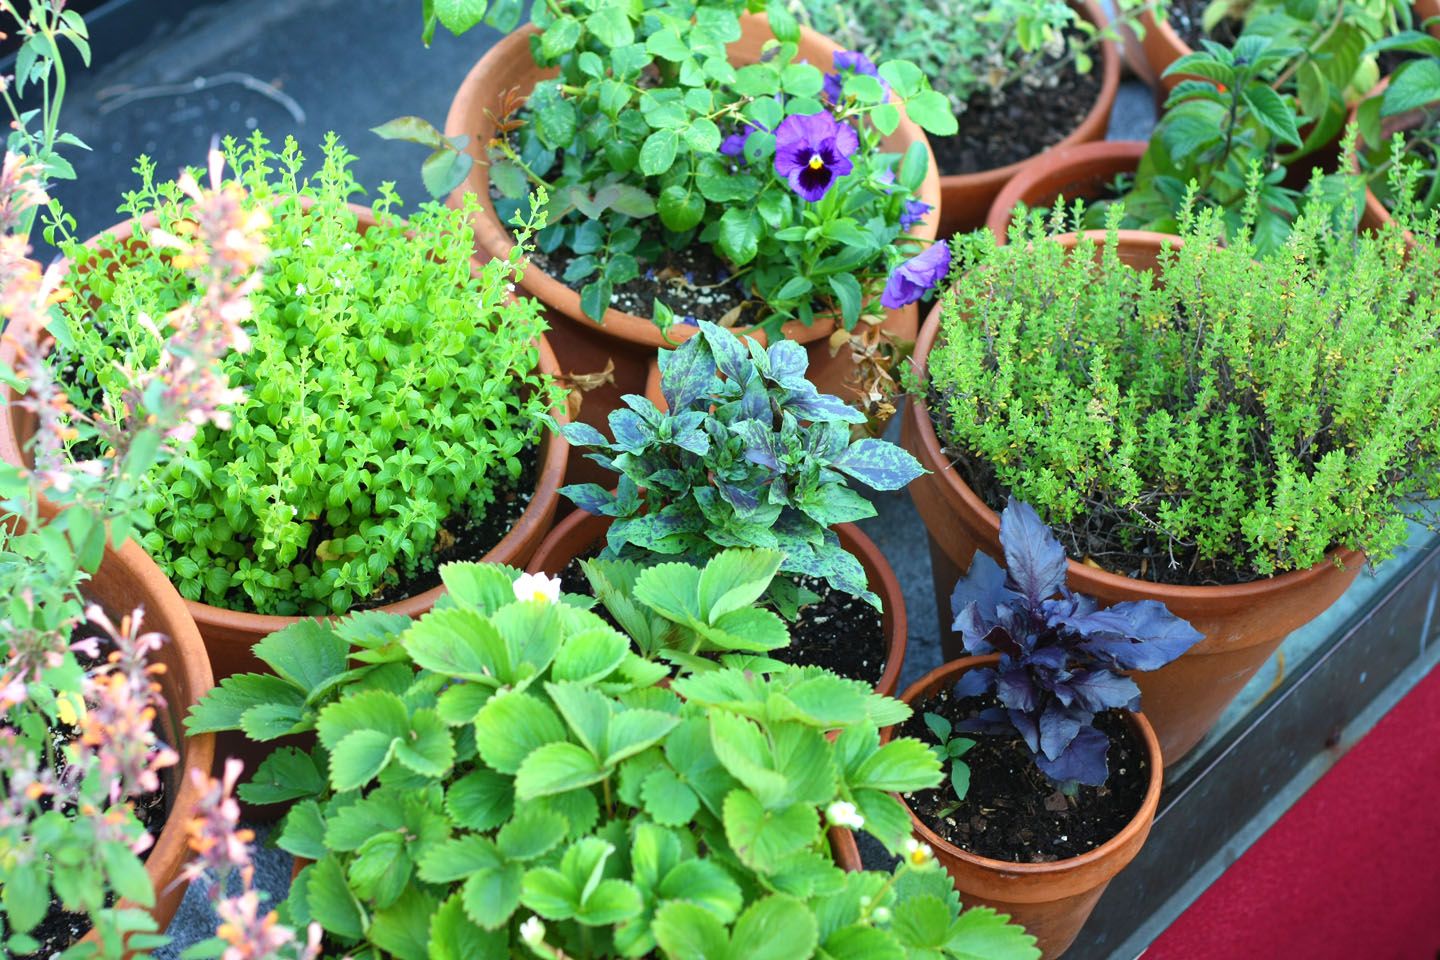 66 Square Feet (Plus): June 2012 -   Herb Garden in Sunken Pots